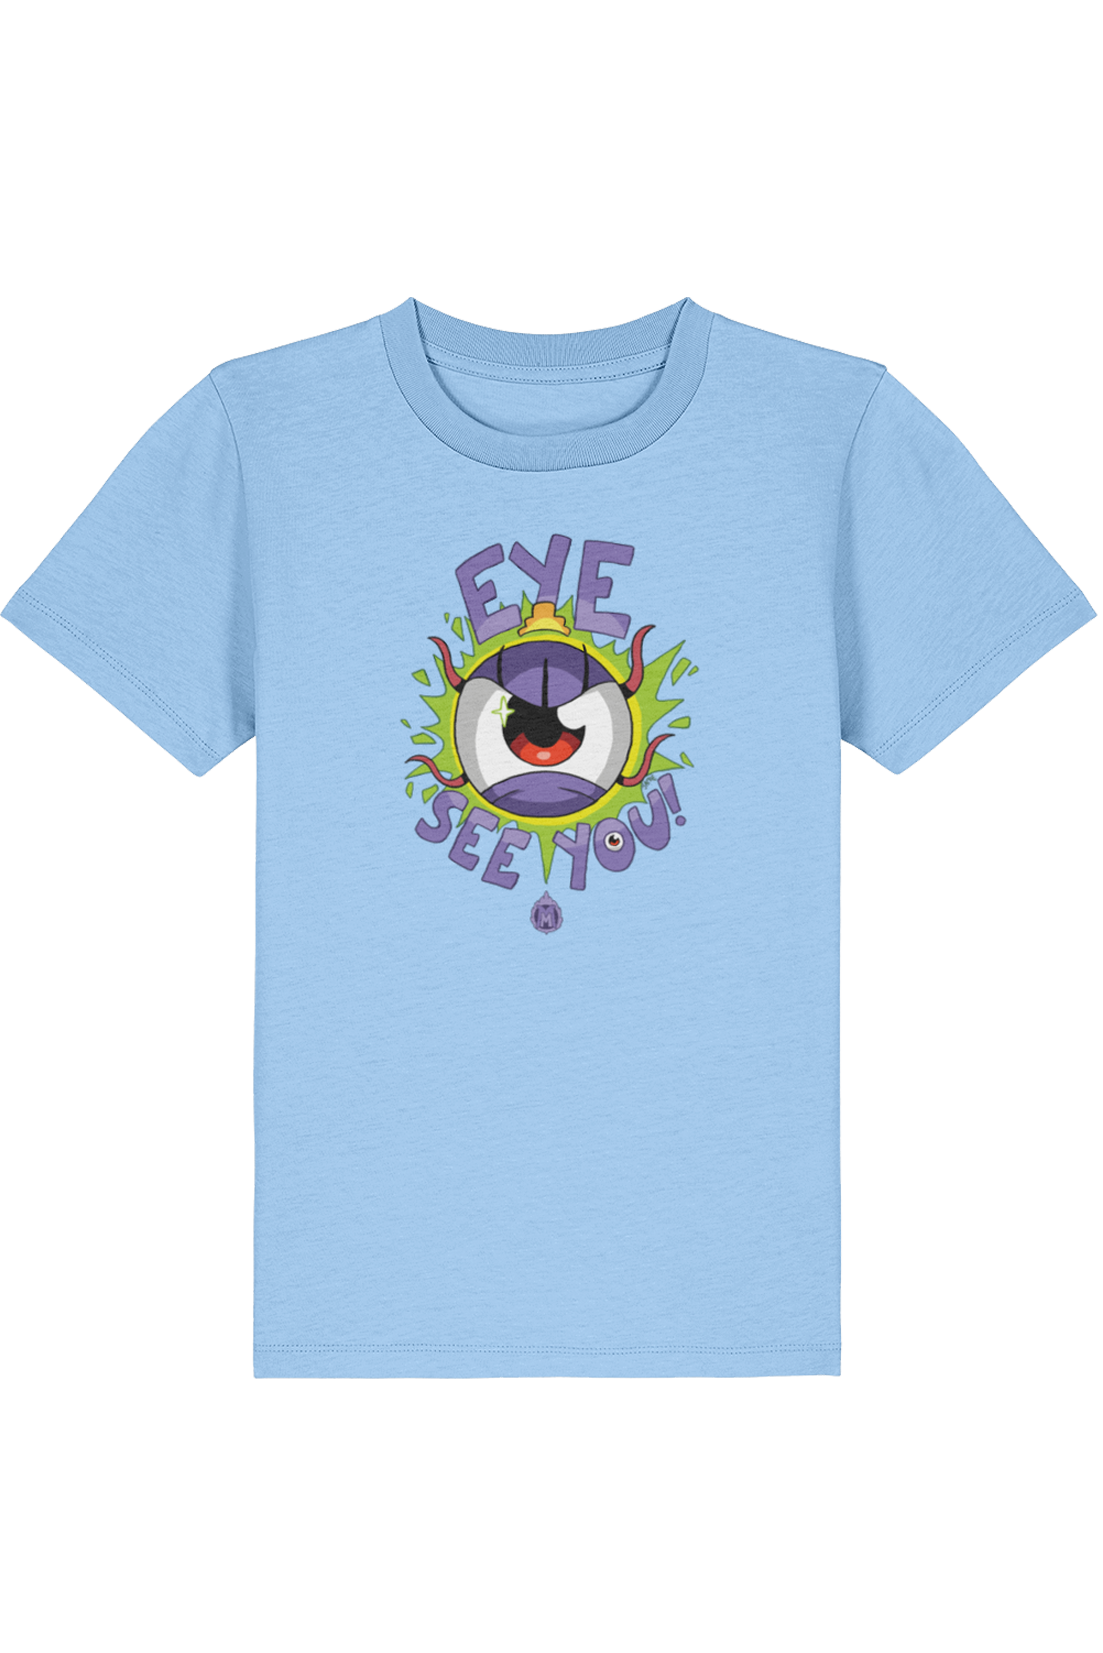 Megalomaniacs Queen Eyeball kids t-shirt